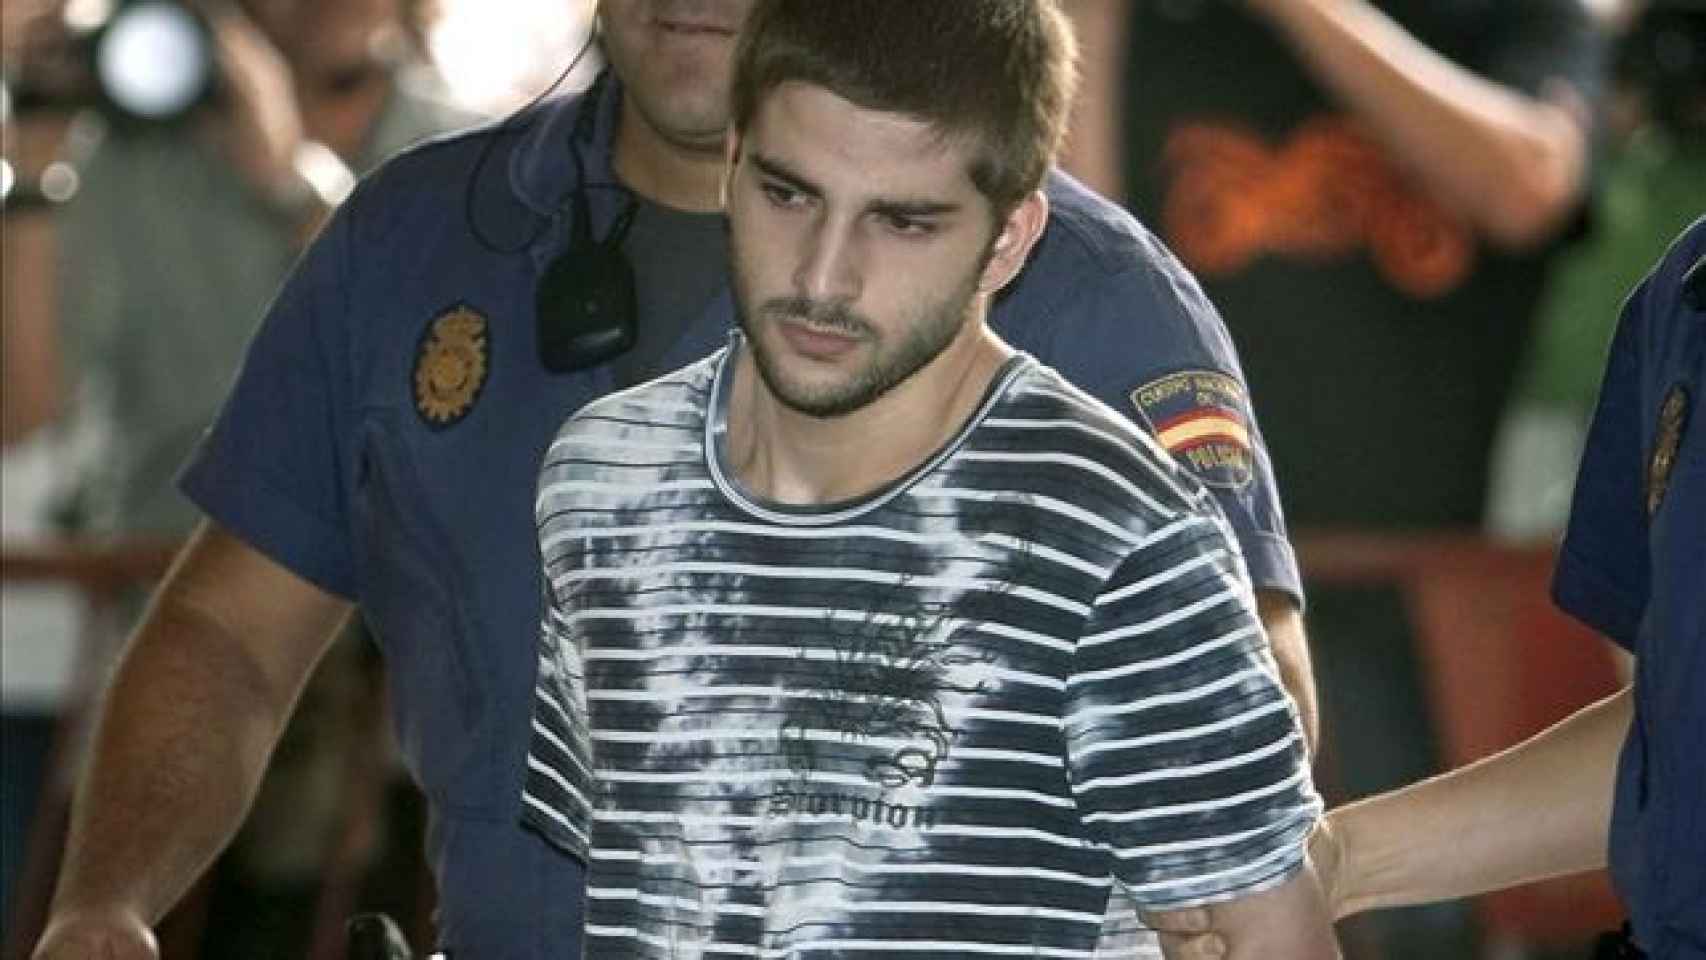 Miguel Carcaño confesó el asesinato pero dio pistas falsas sobre el lugar donde escondió el cuerpo. Nunca se ha encontrado.